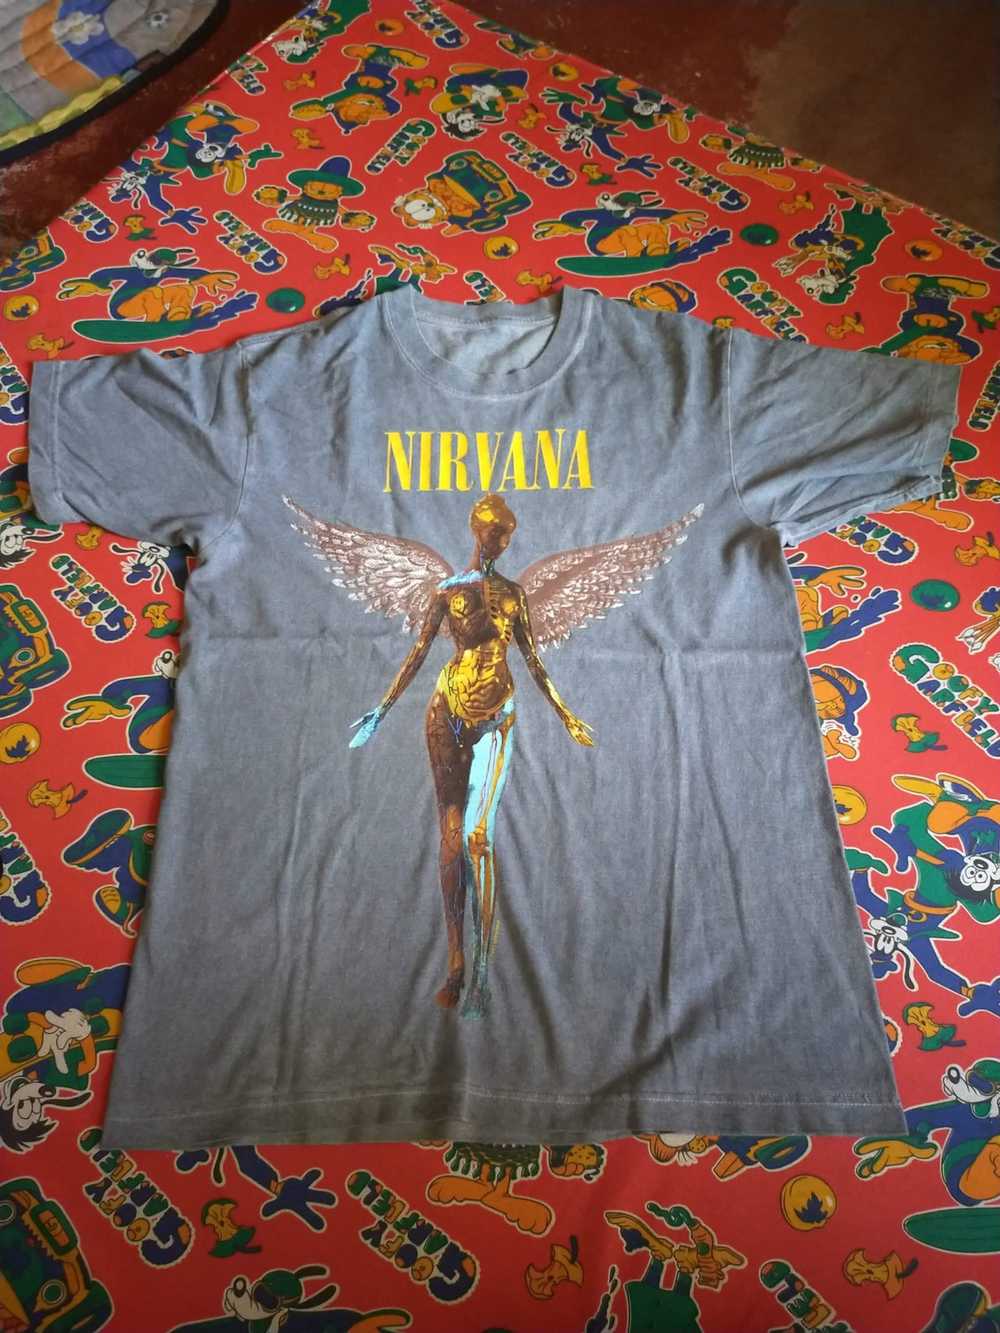 Vintage Nirvana - image 3